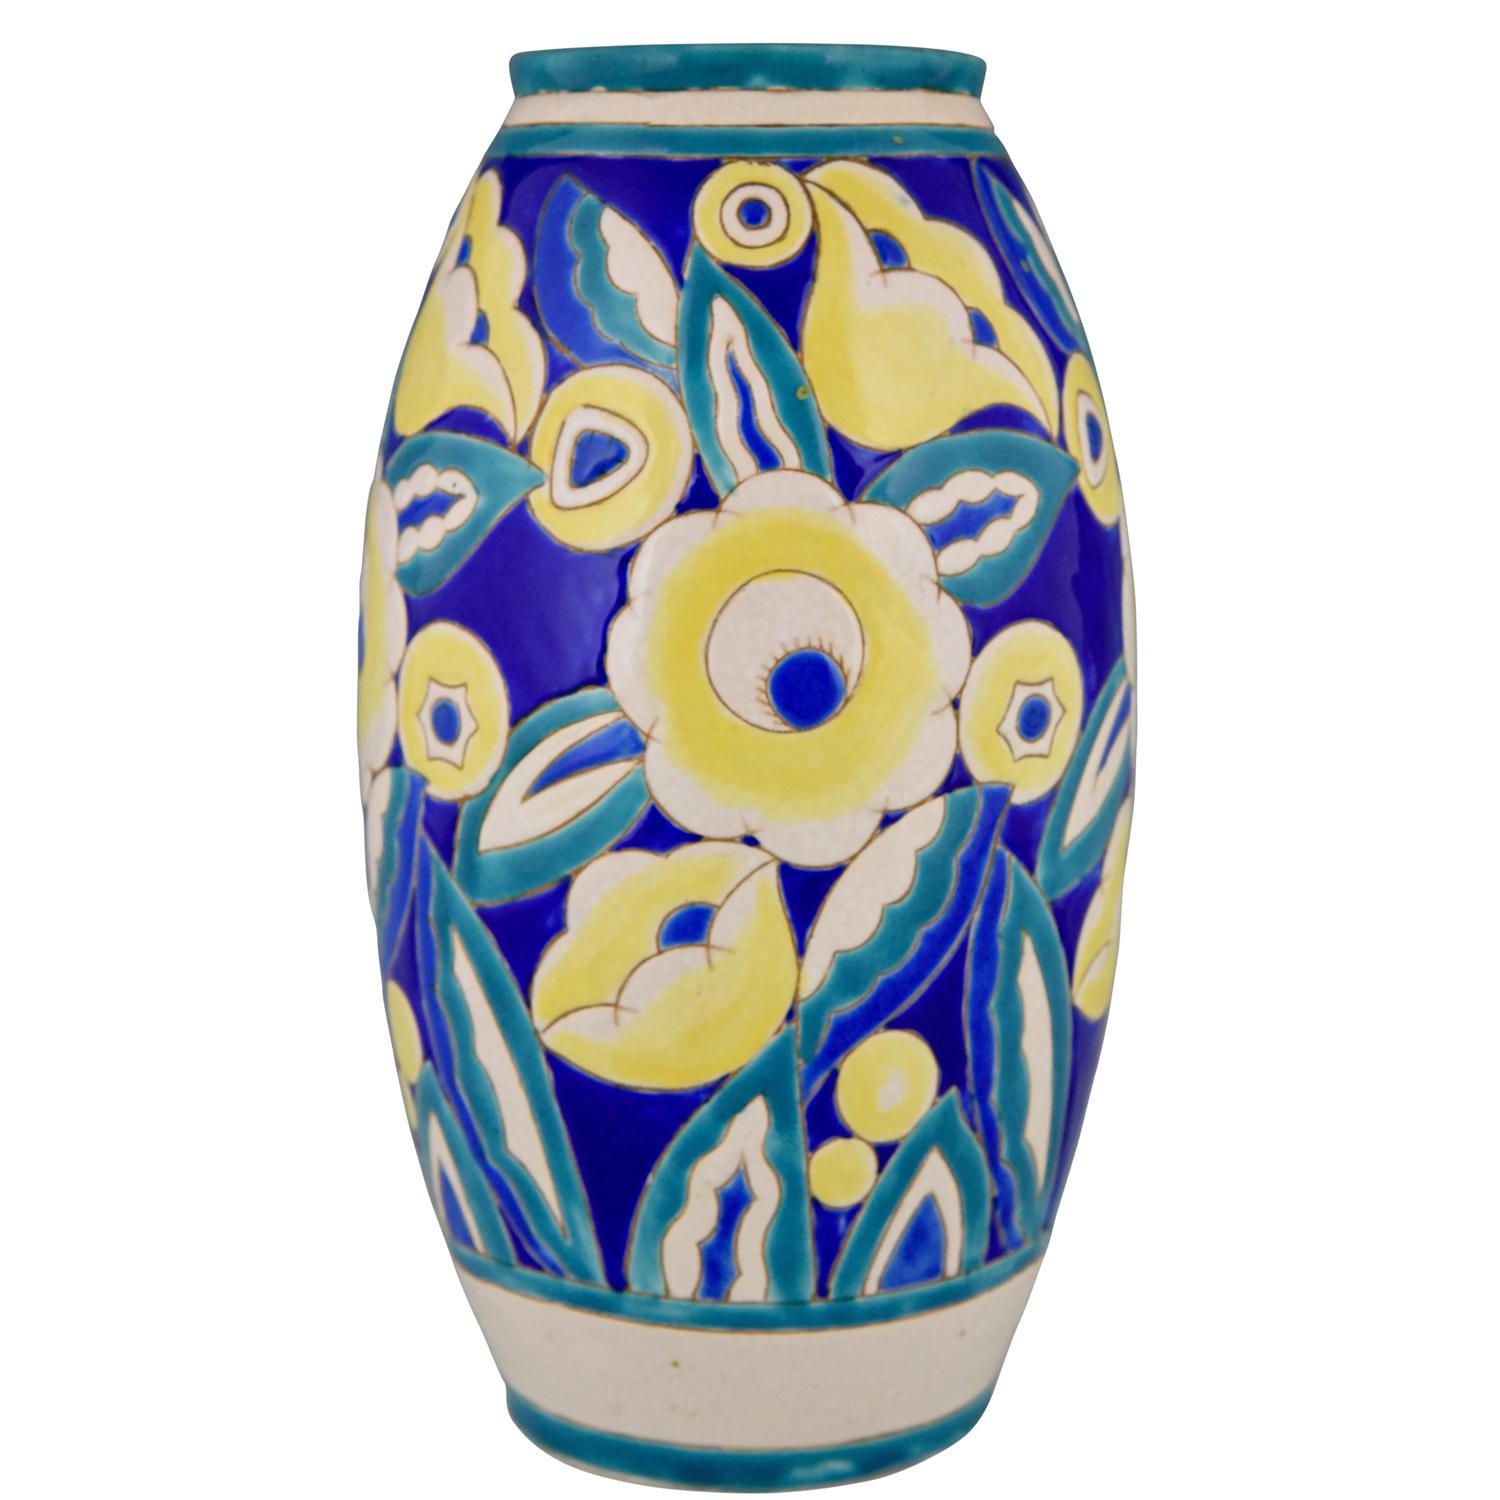 Art Deco Ceramic Vase with Flowers Keramis, Belgium, 1932